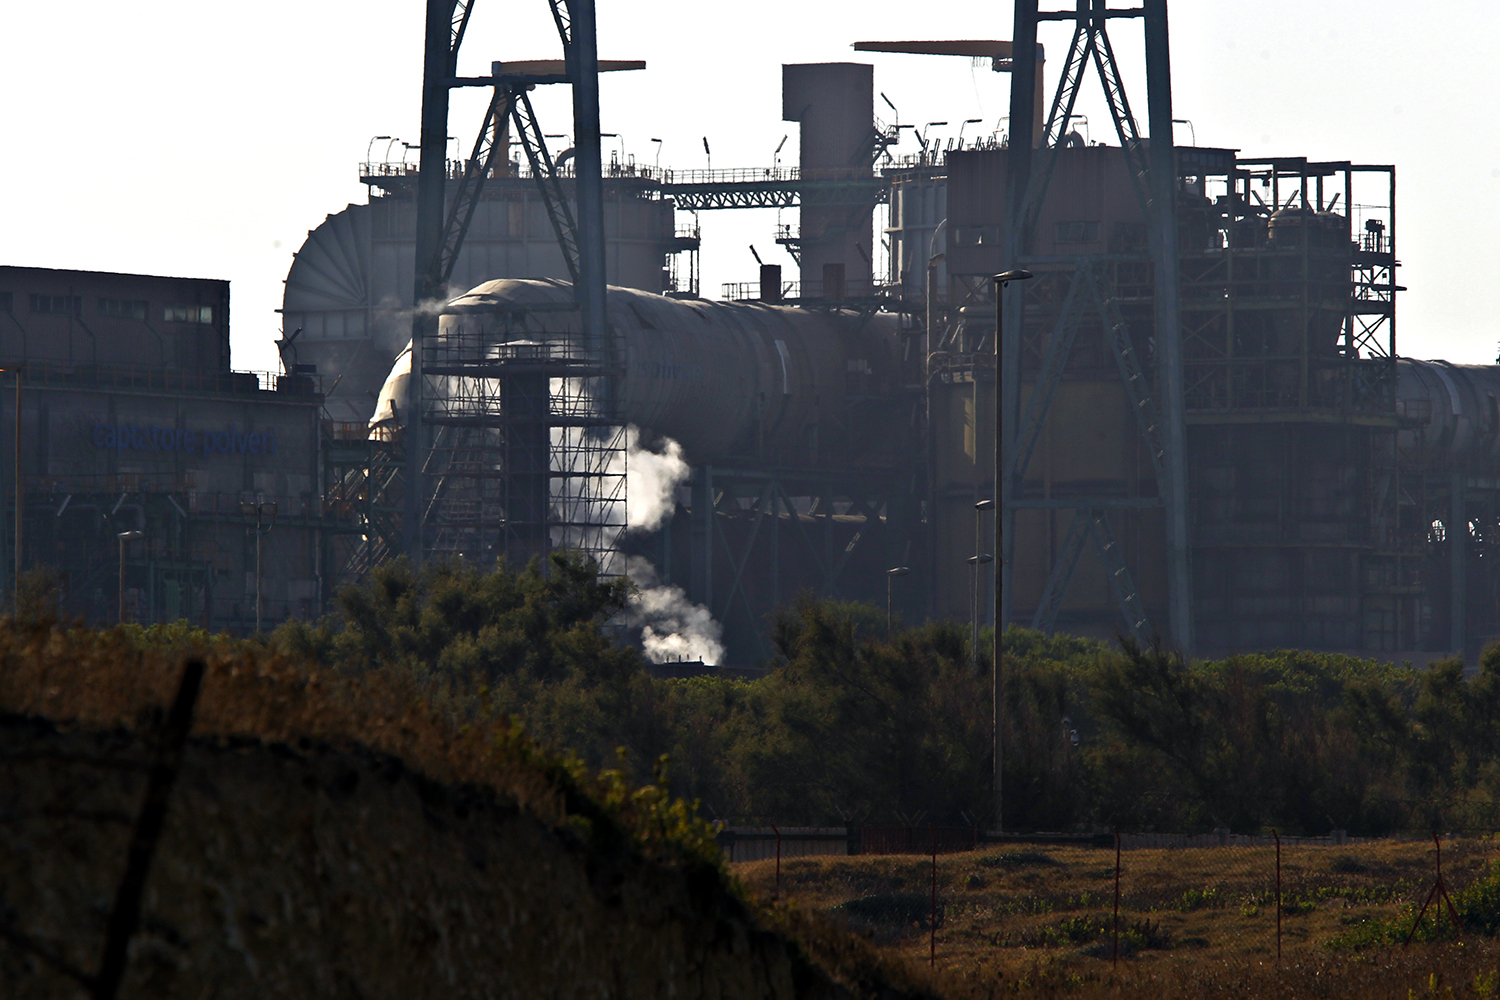  La centrale a carbone Federico II di Cerano è una delle otto centrali ancora attive nel territorio italiano, nonché la prima in Italia per emissioni di CO2 e per costi causati dalle emissioni inquinanti.
 